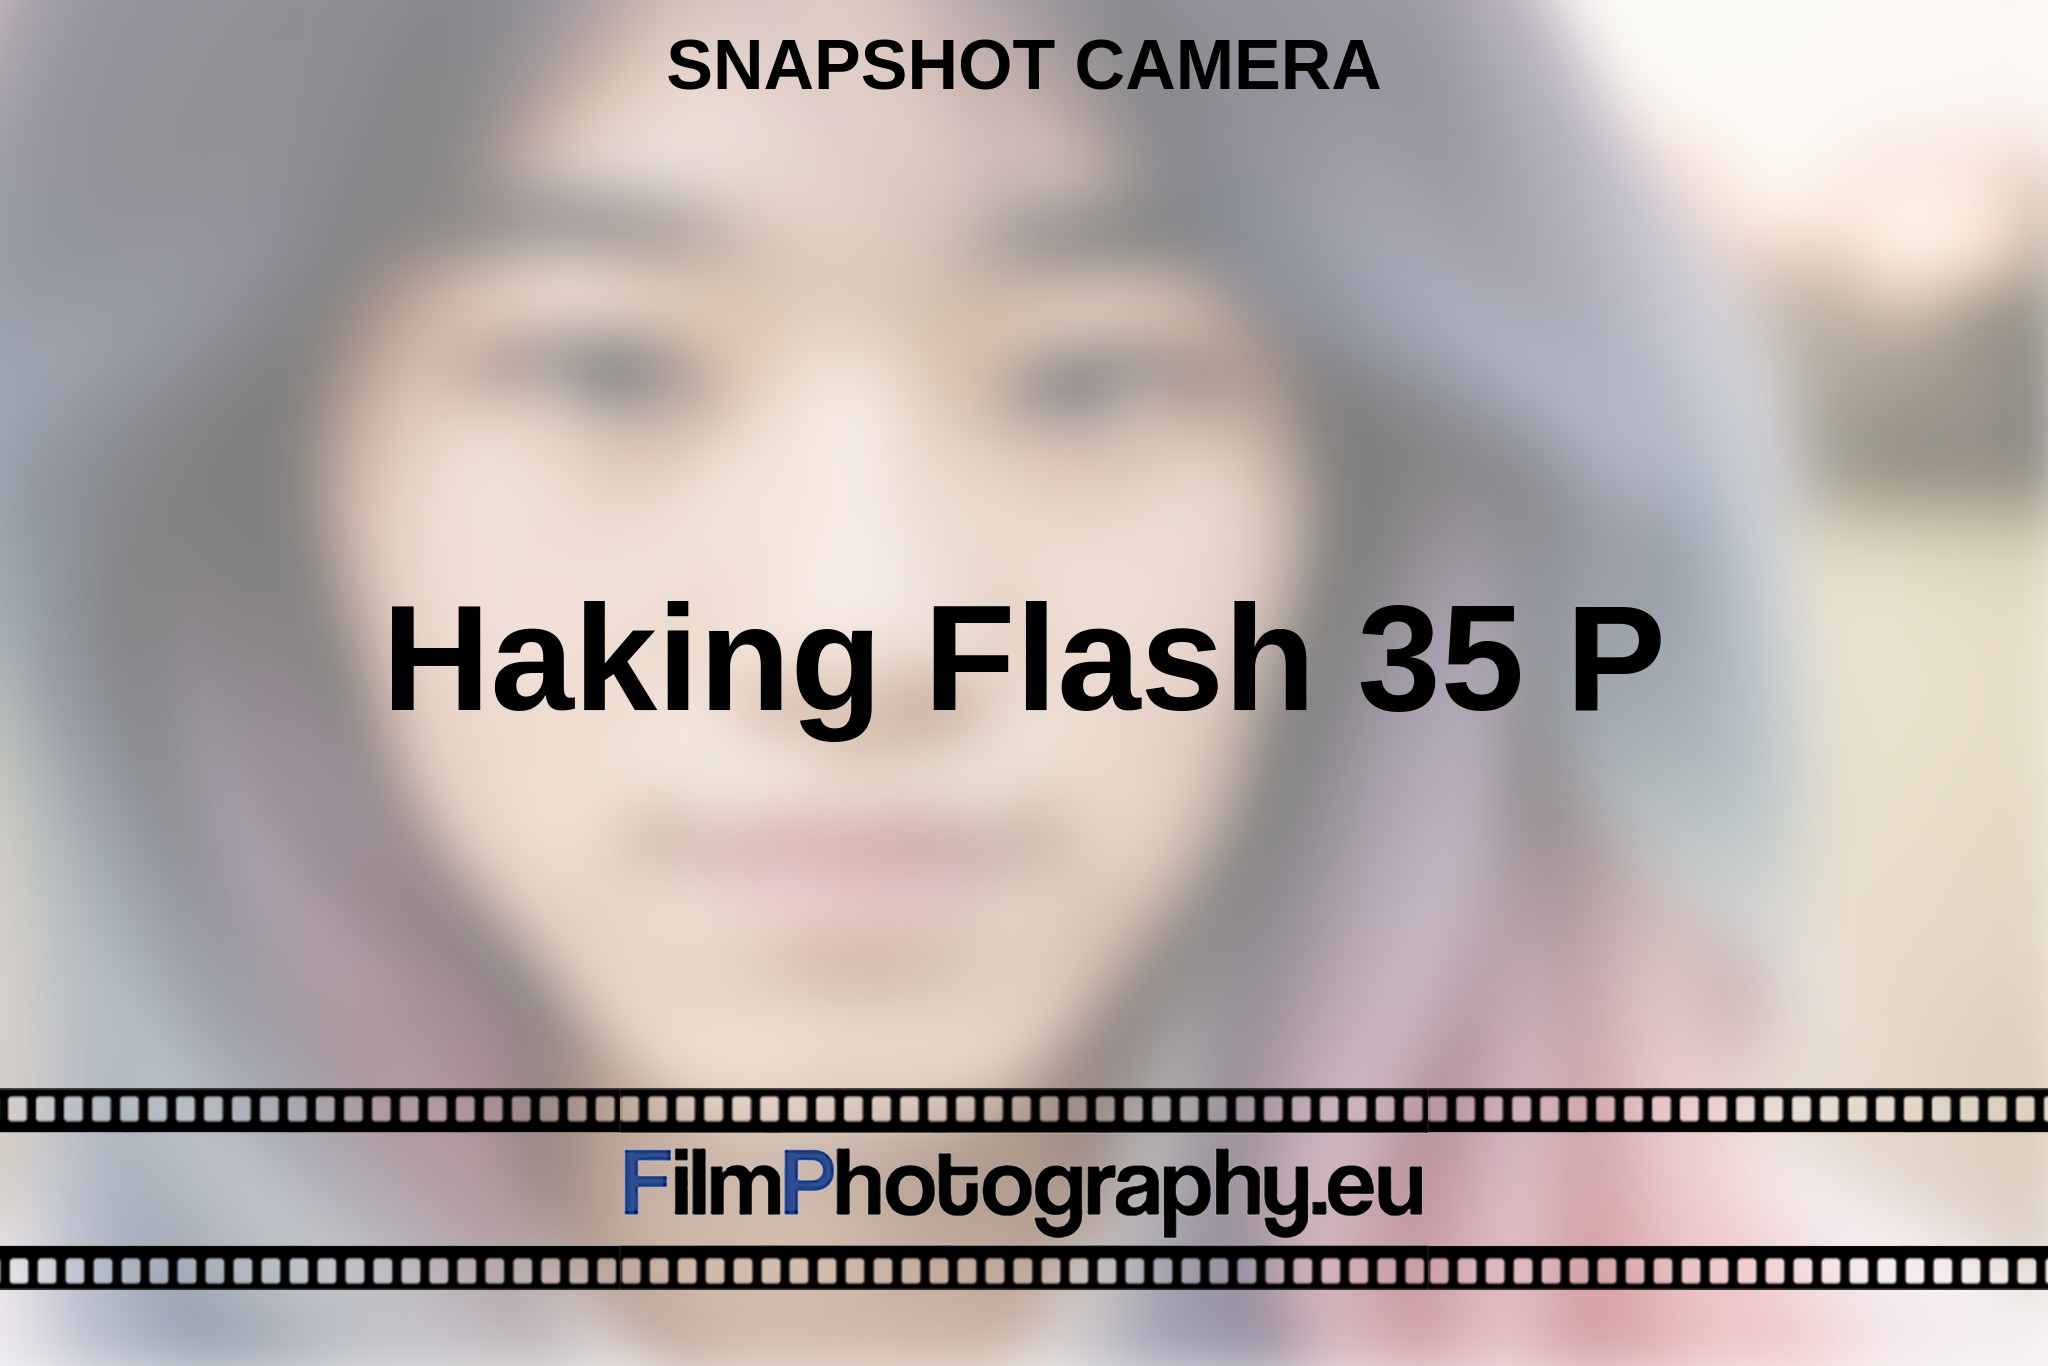 haking-flash-35-p-snapshot-camera-en-bnv.jpg